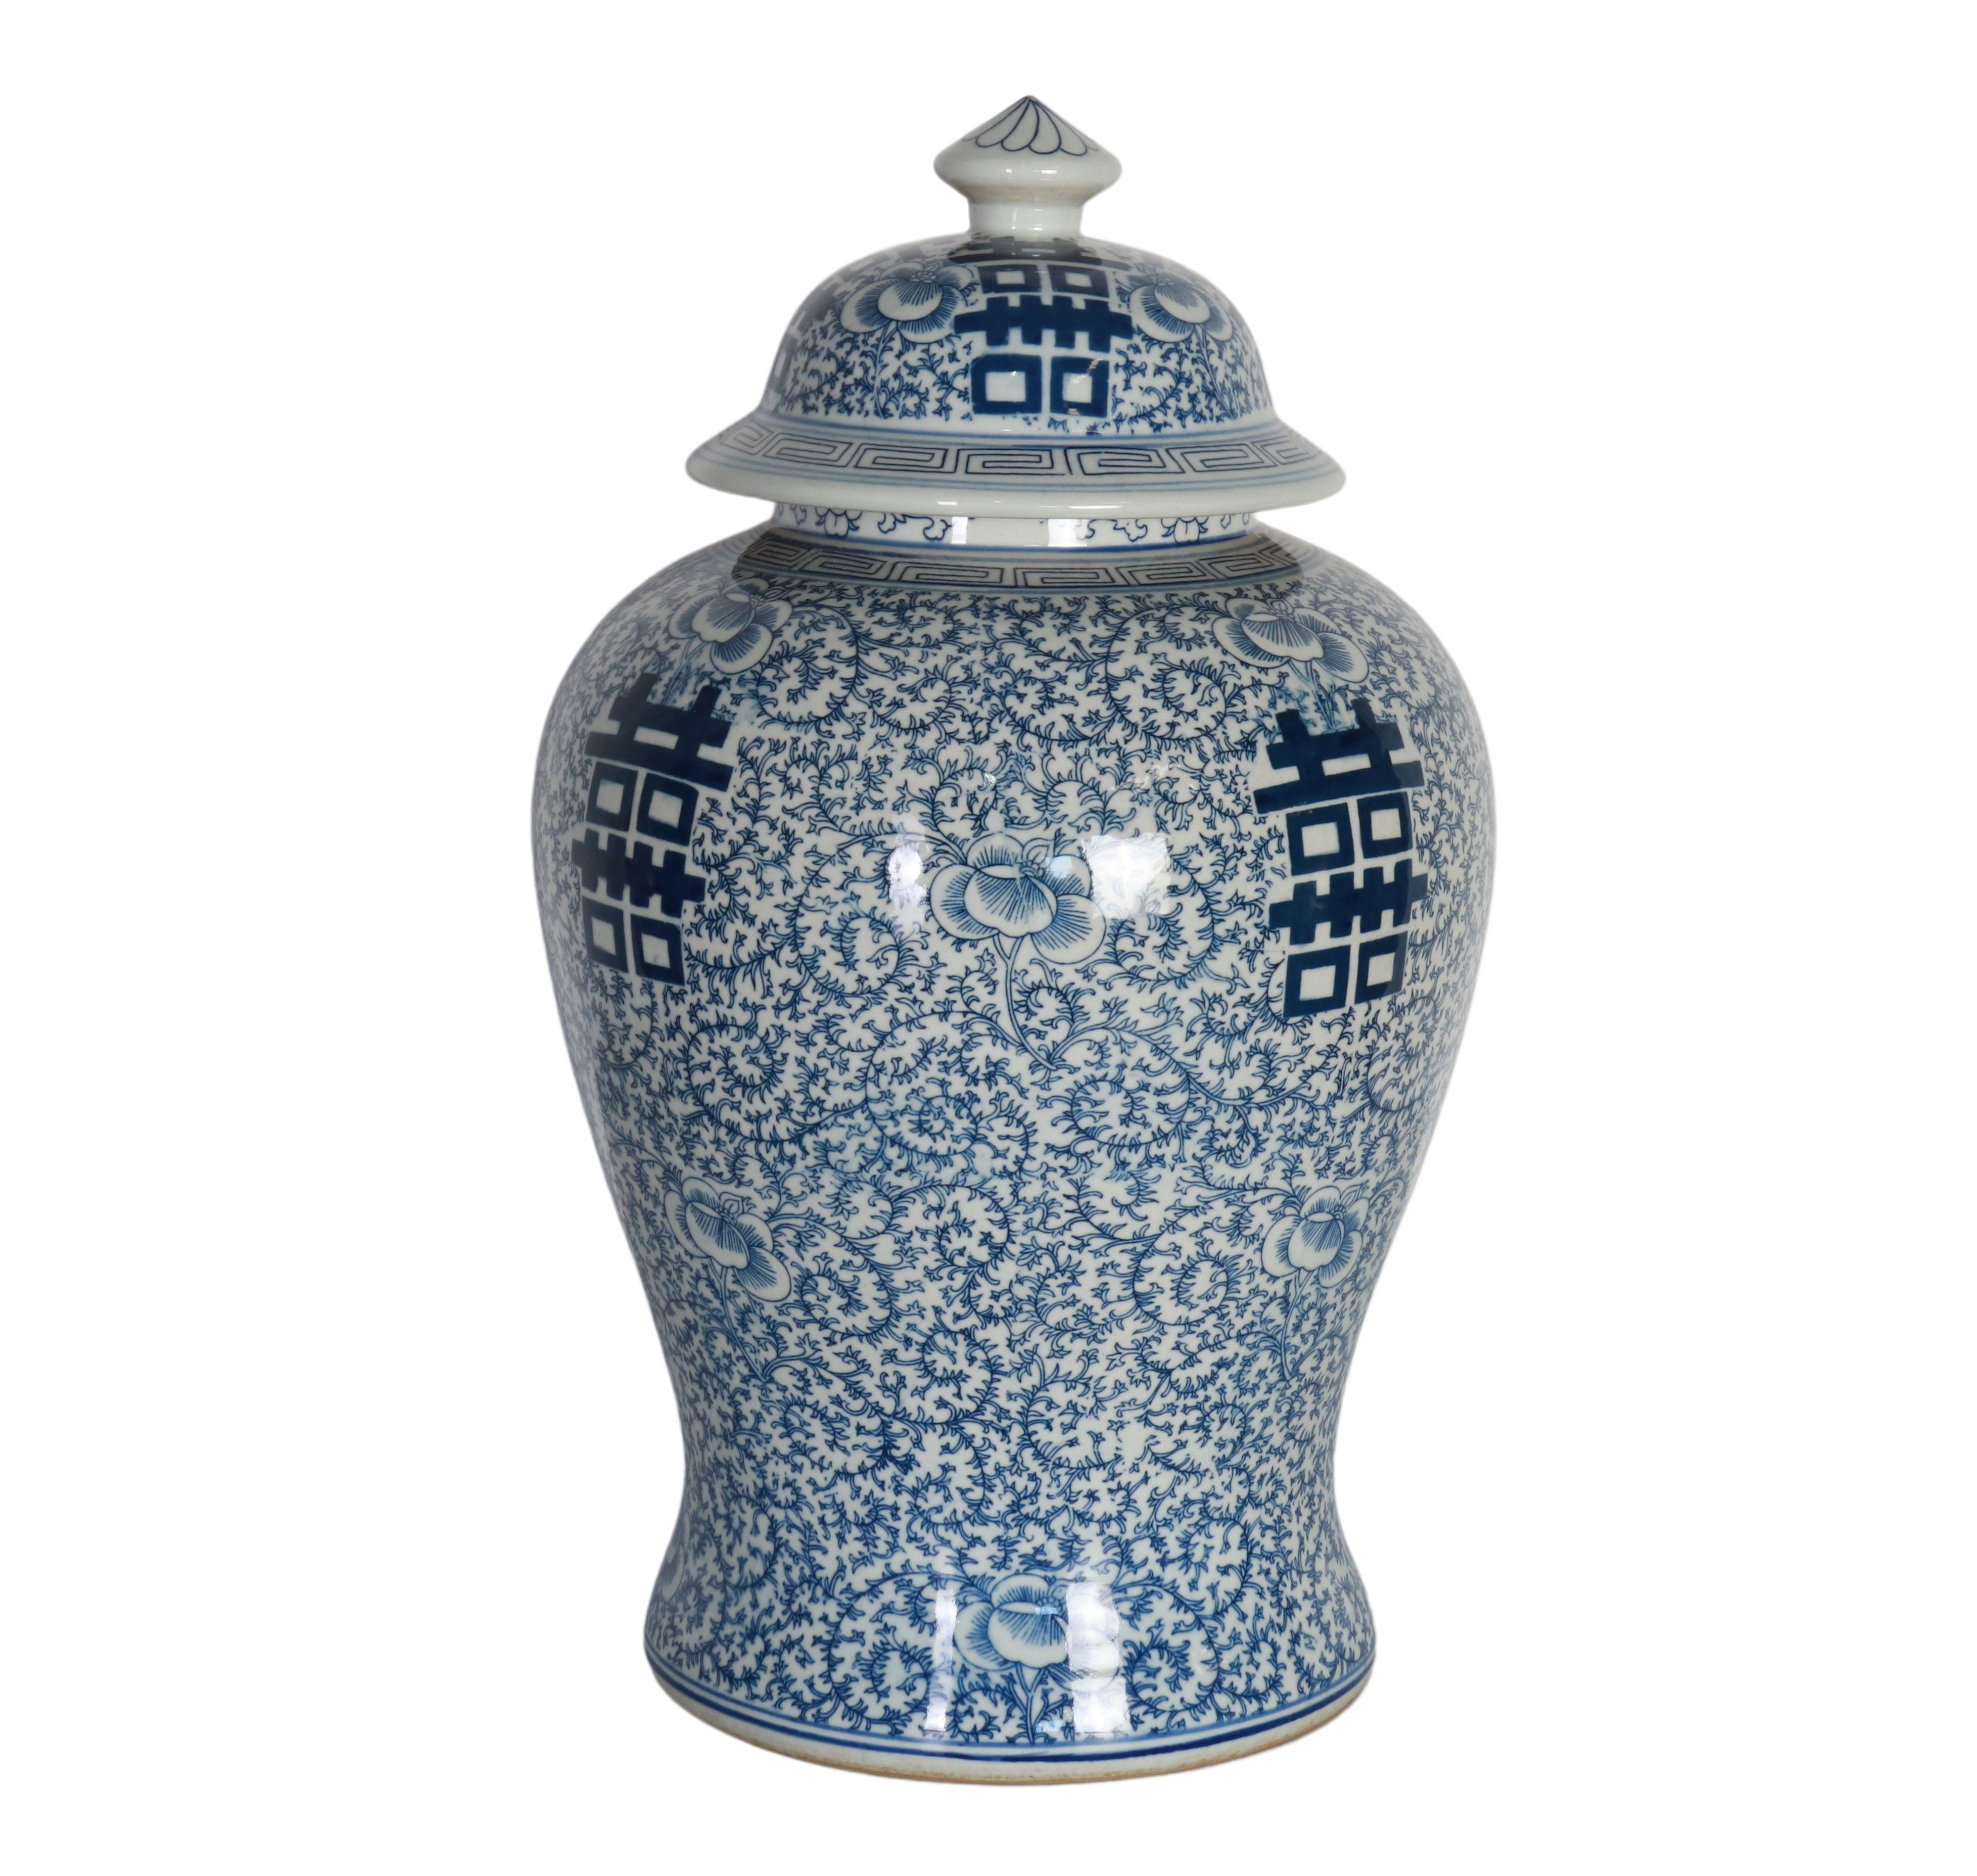 Blue and white ceramic ginger jar 